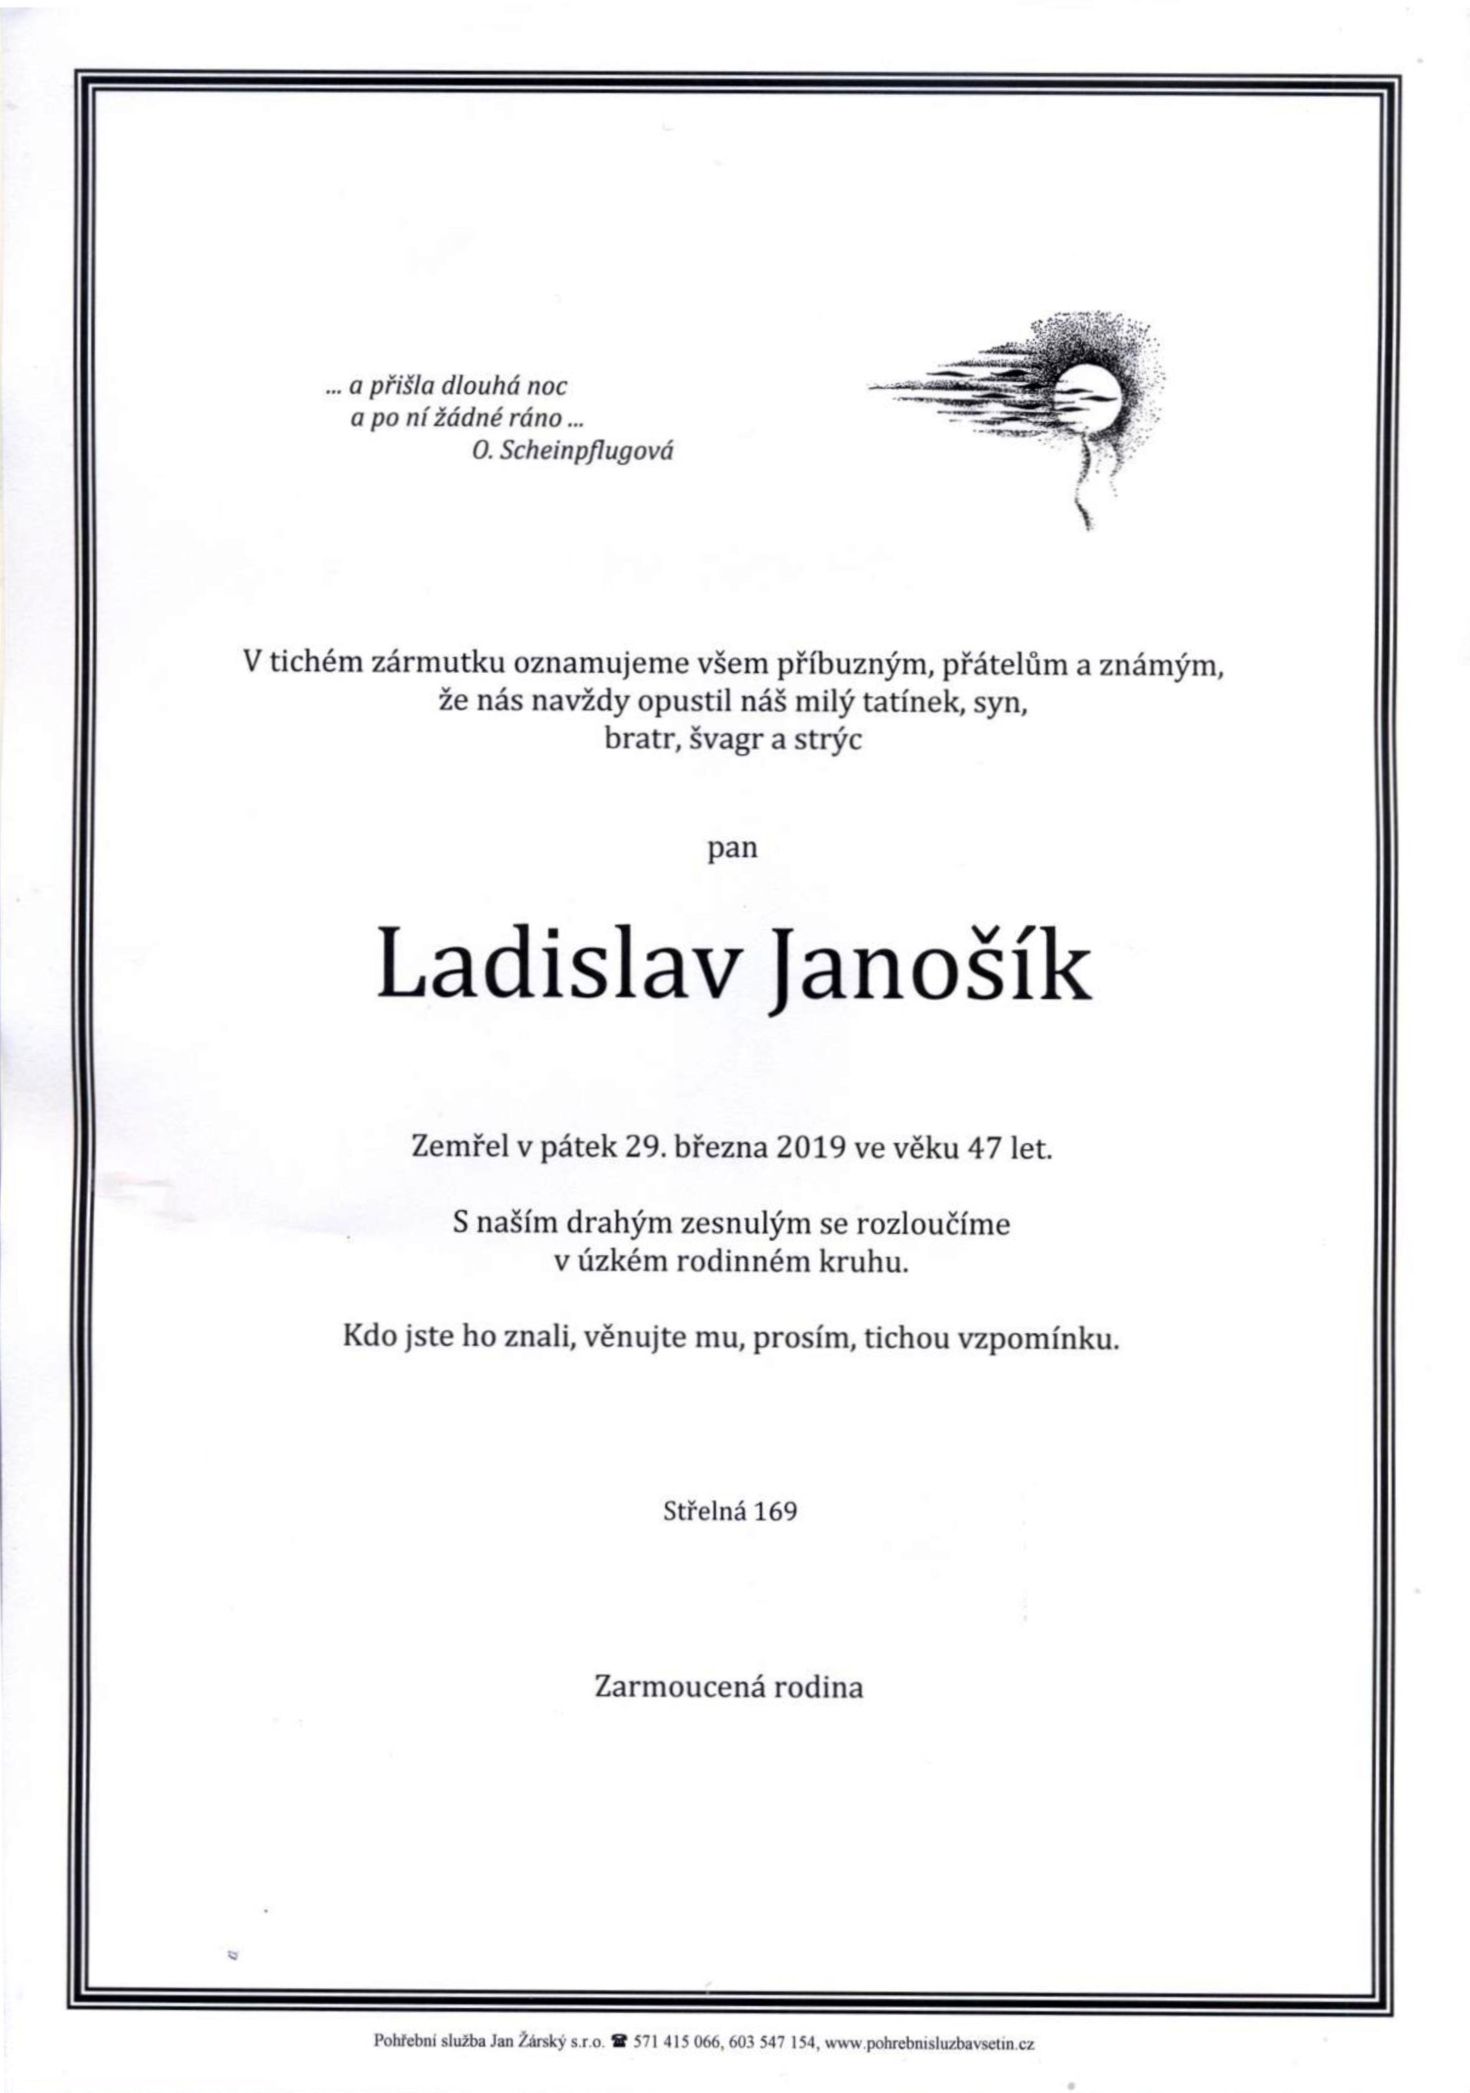 Ladislav Janošík